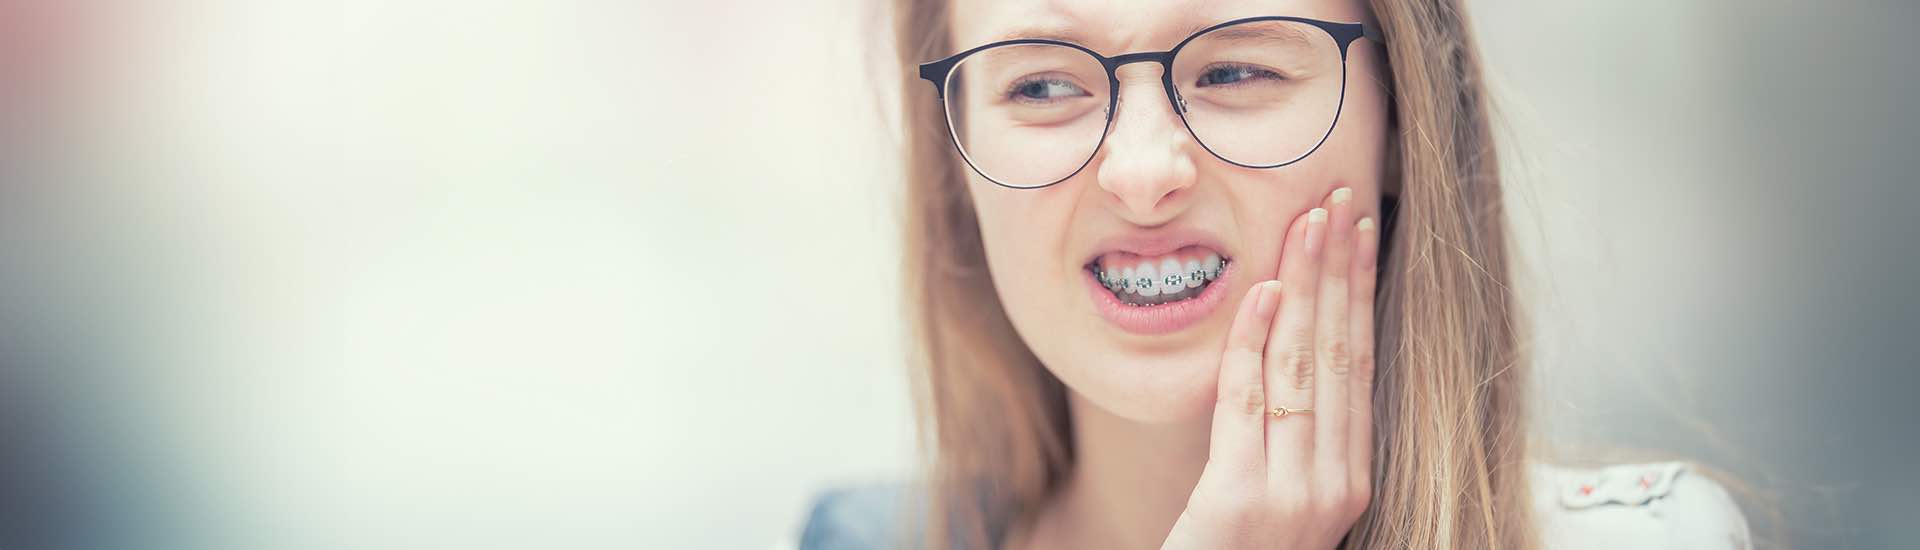 Czy leczenie ortodontyczne boli?